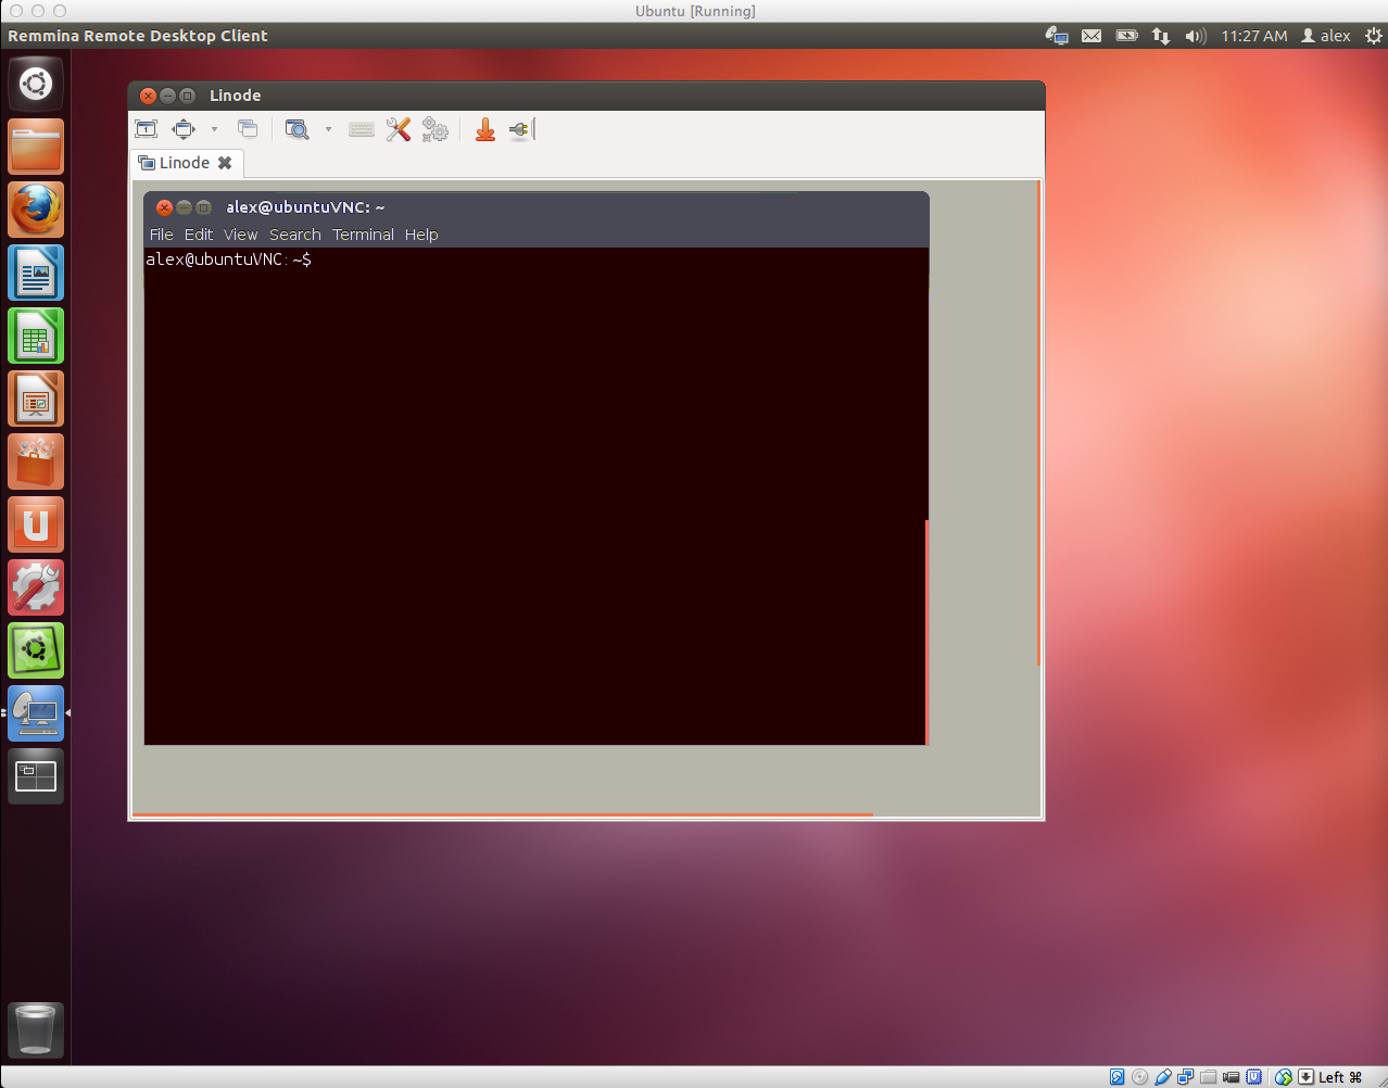 An Ubuntu desktop computer connected to an Ubuntu desktop session on a Linode.